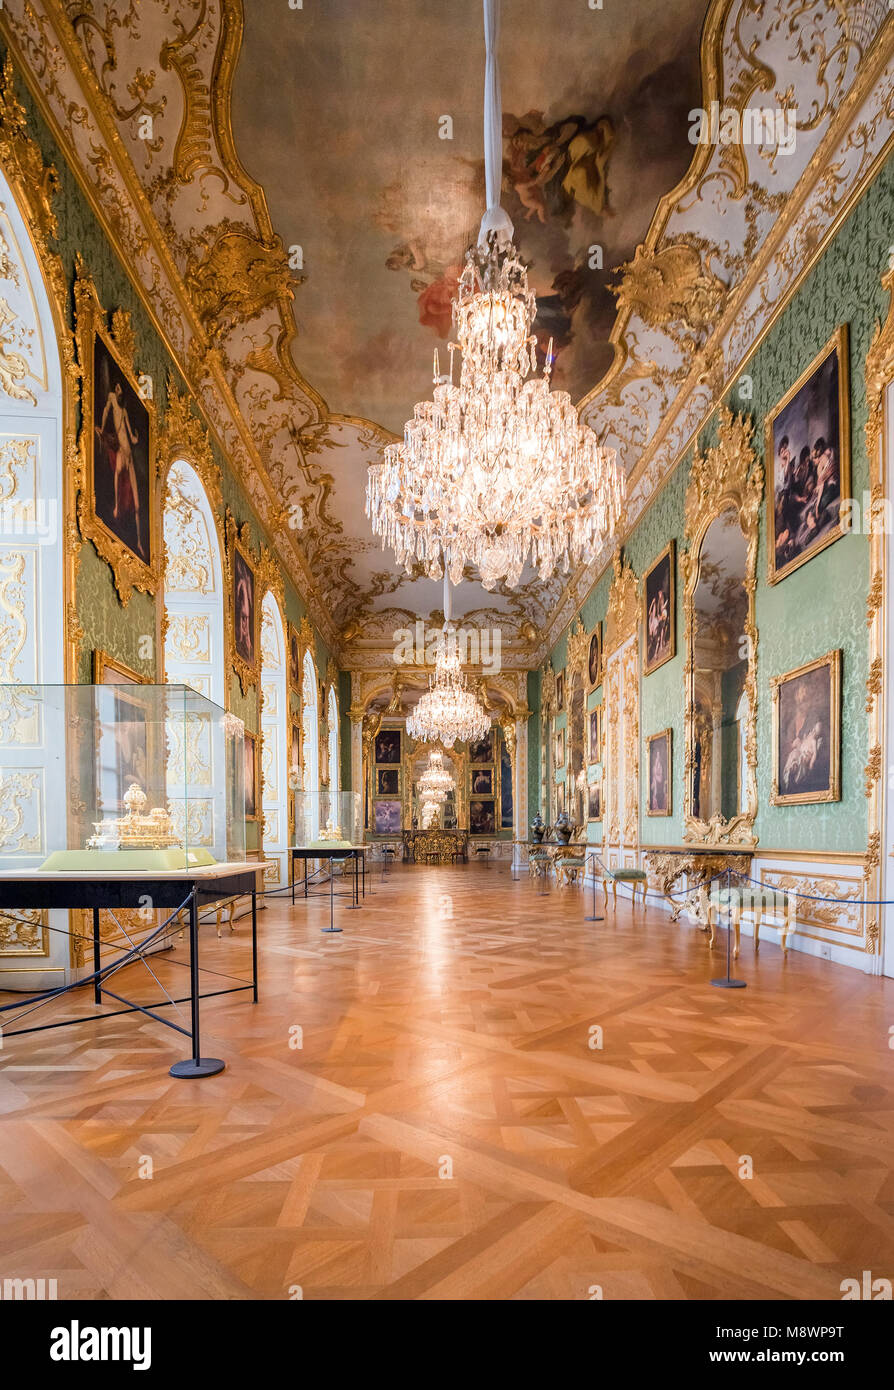 La residenza di Monaco di Baviera è servita come sede del Governo e residenza dei duchi bavaresi, gli elettori e i re dal 1508 al 1918 Foto Stock